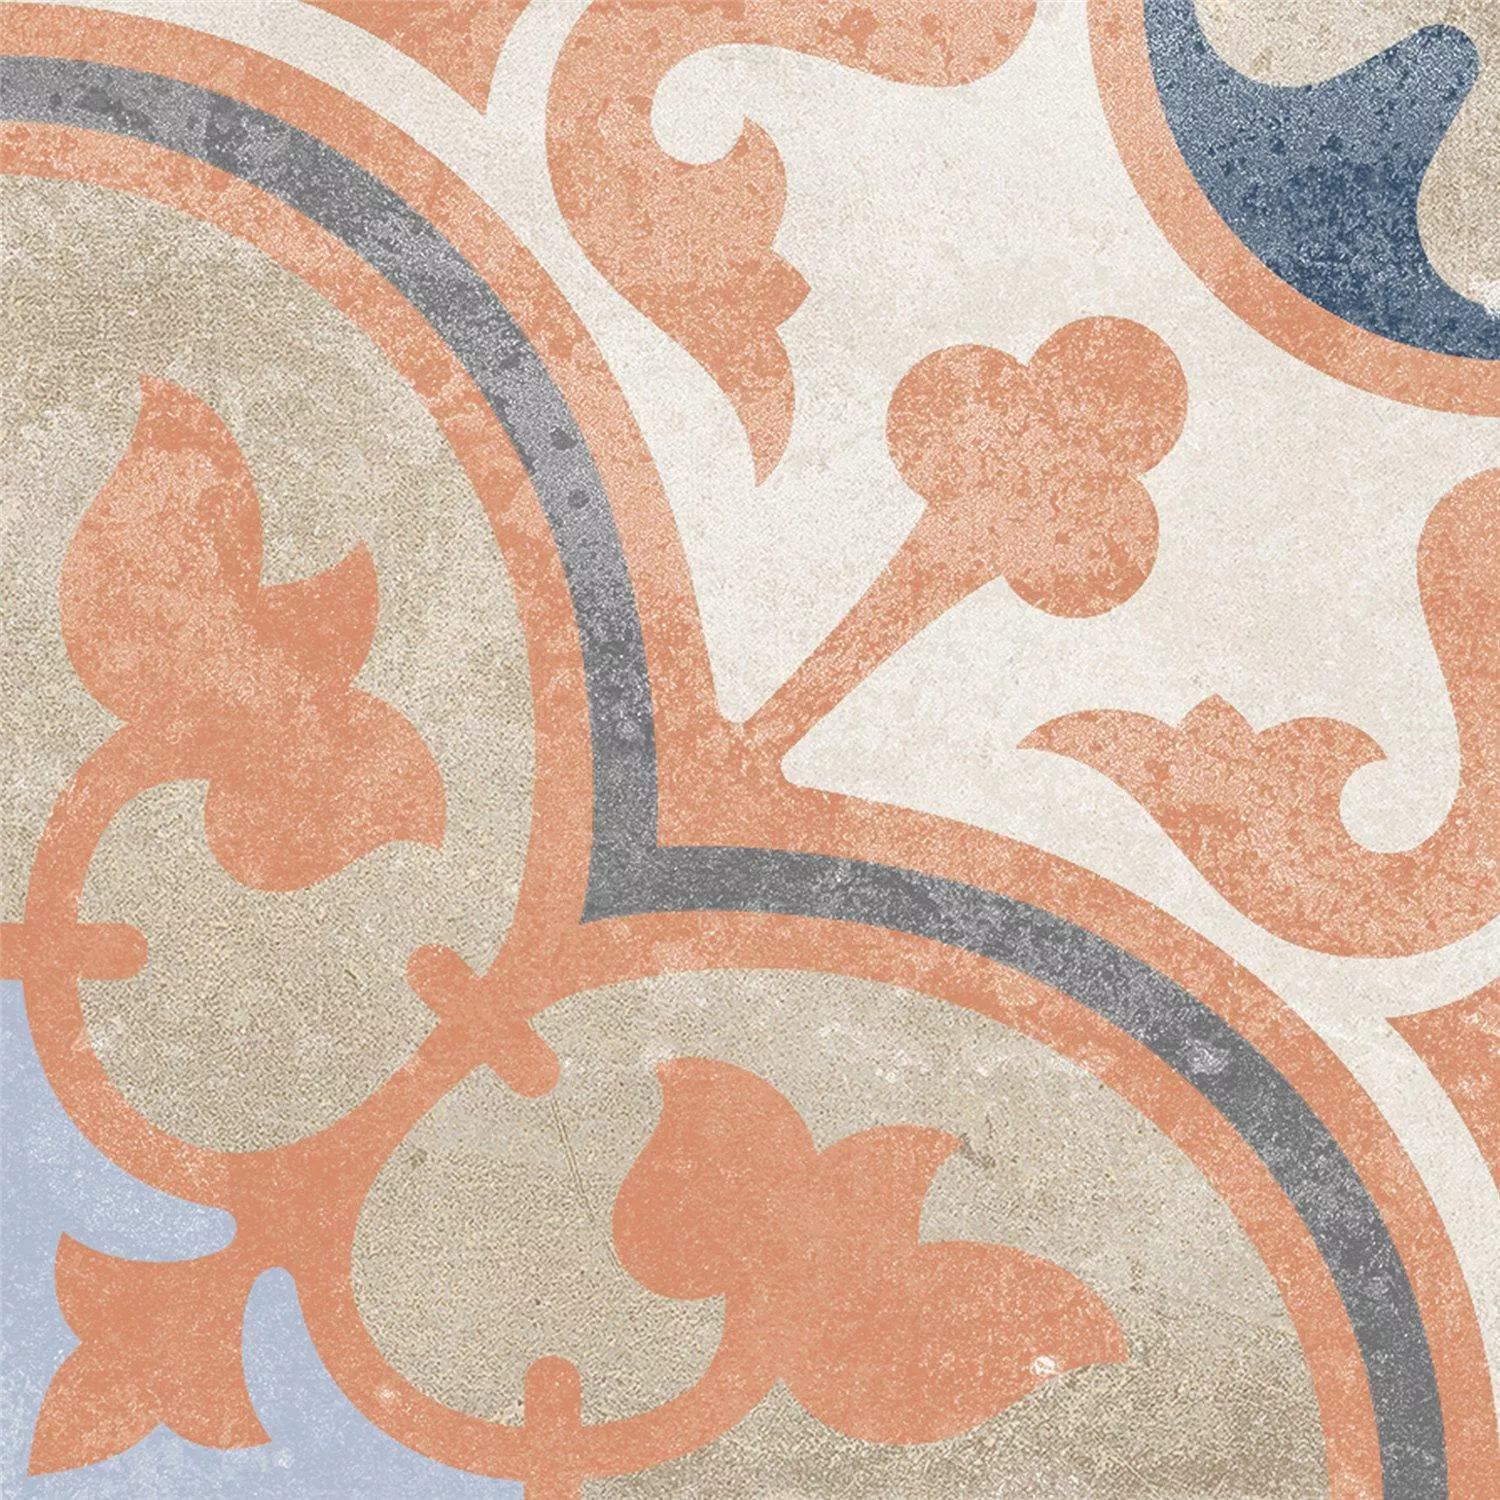 Πλακάκι Δαπέδου Εμφάνιση Tσιμέντου Toulon Manolo 18,6x18,6cm